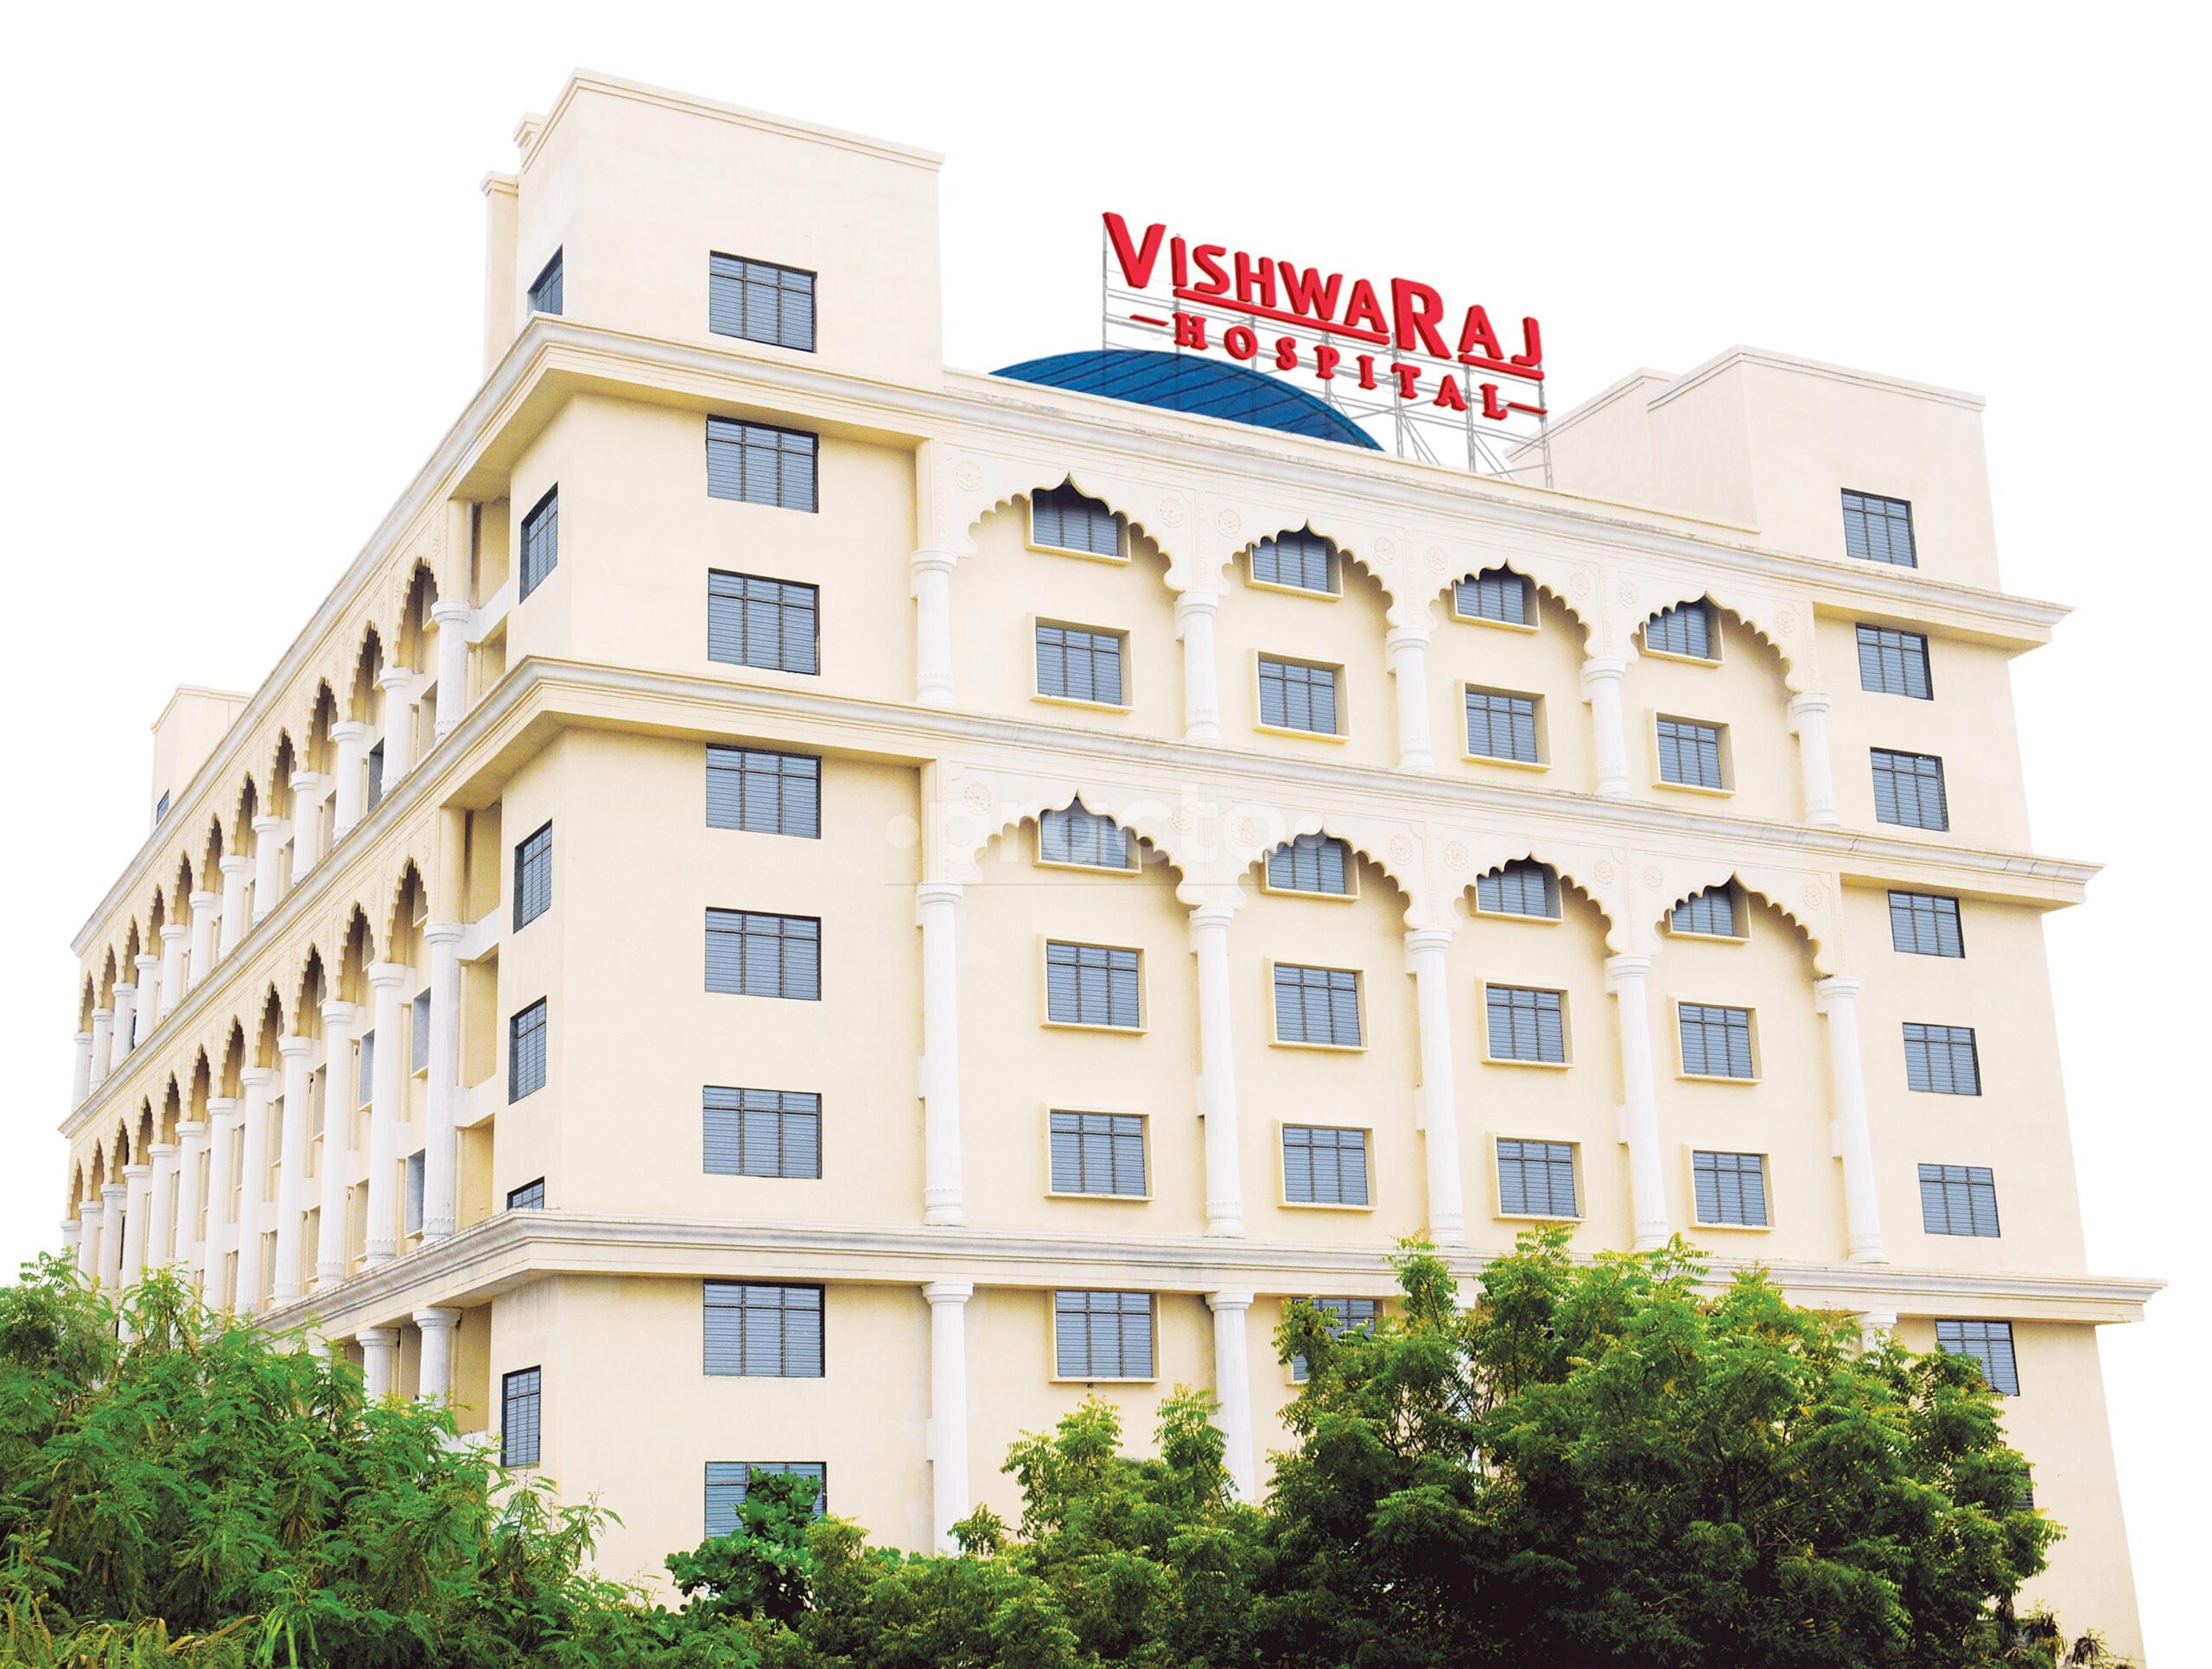 vishwaraj-hospital